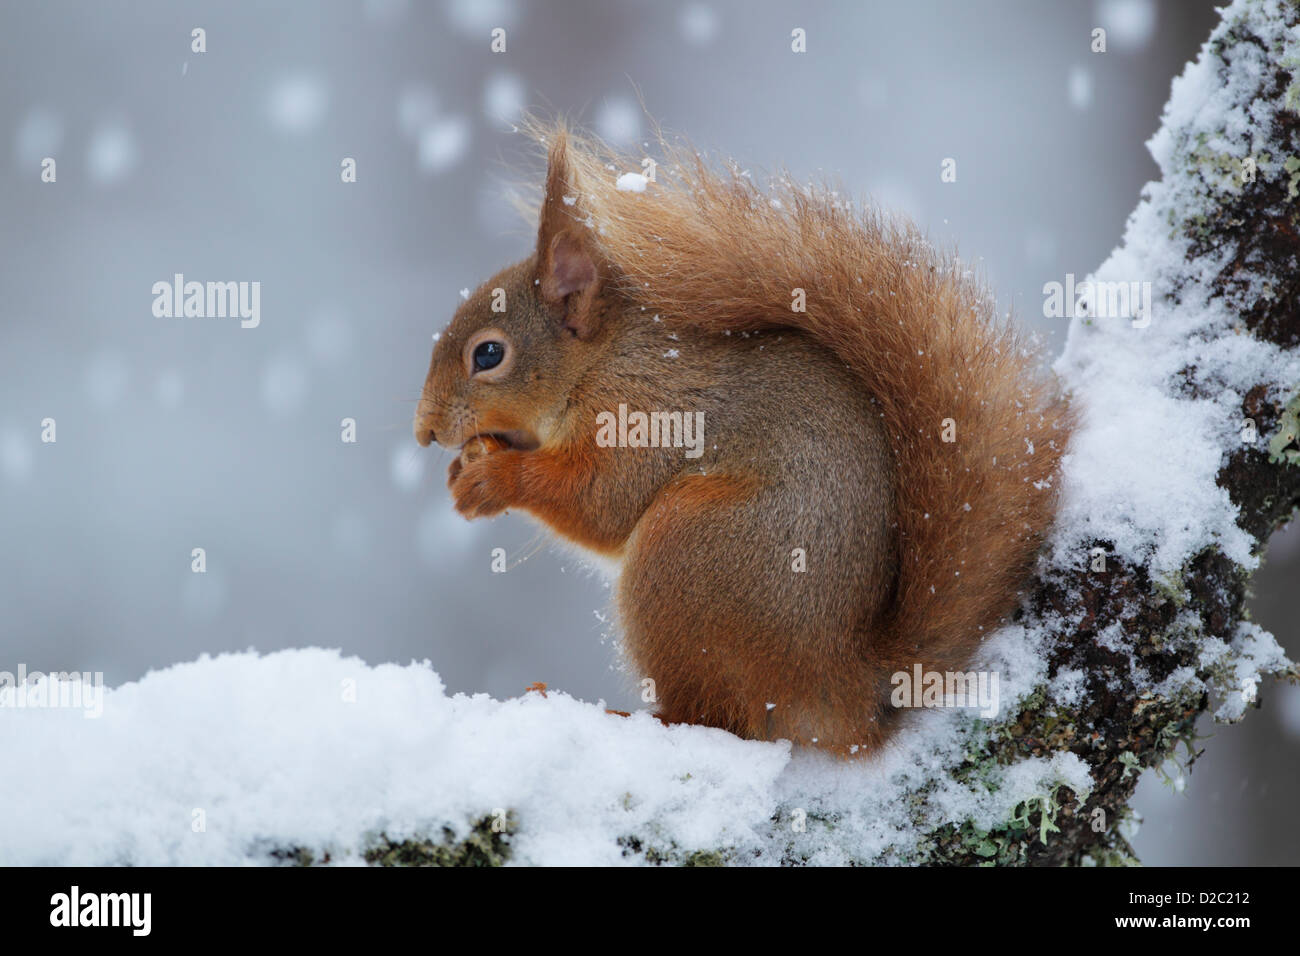 Red scoiattolo (Sciurus vulgaris) seduto su una coperta di neve ramo mentre mangiando Foto Stock